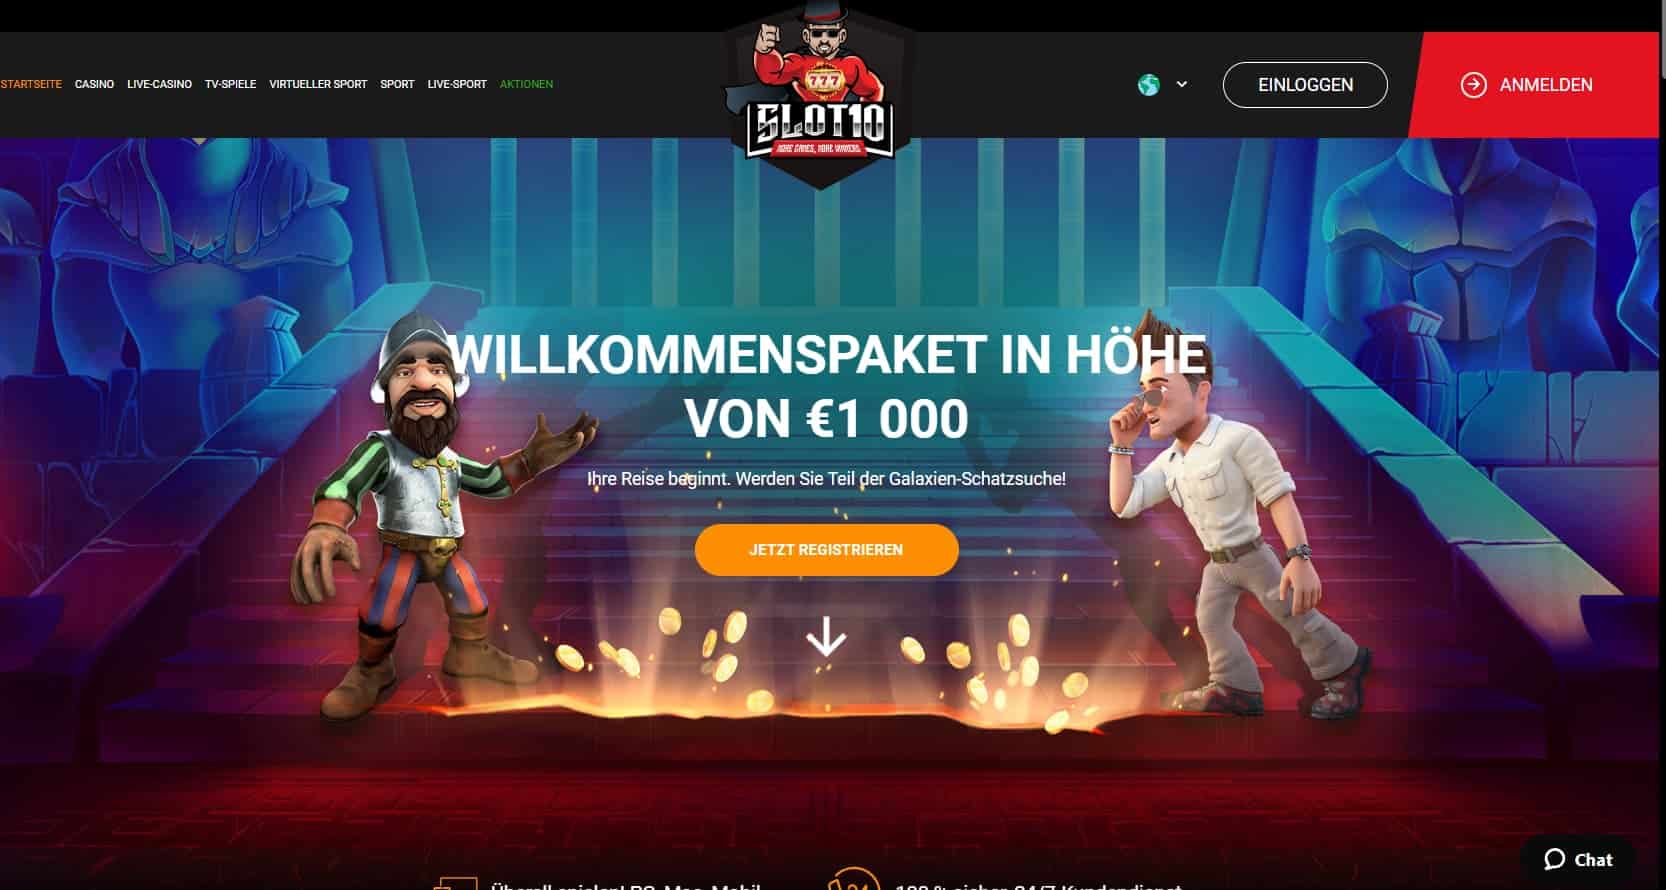 7 seltsame Fakten über seriöse Online Casinos Oesterreich